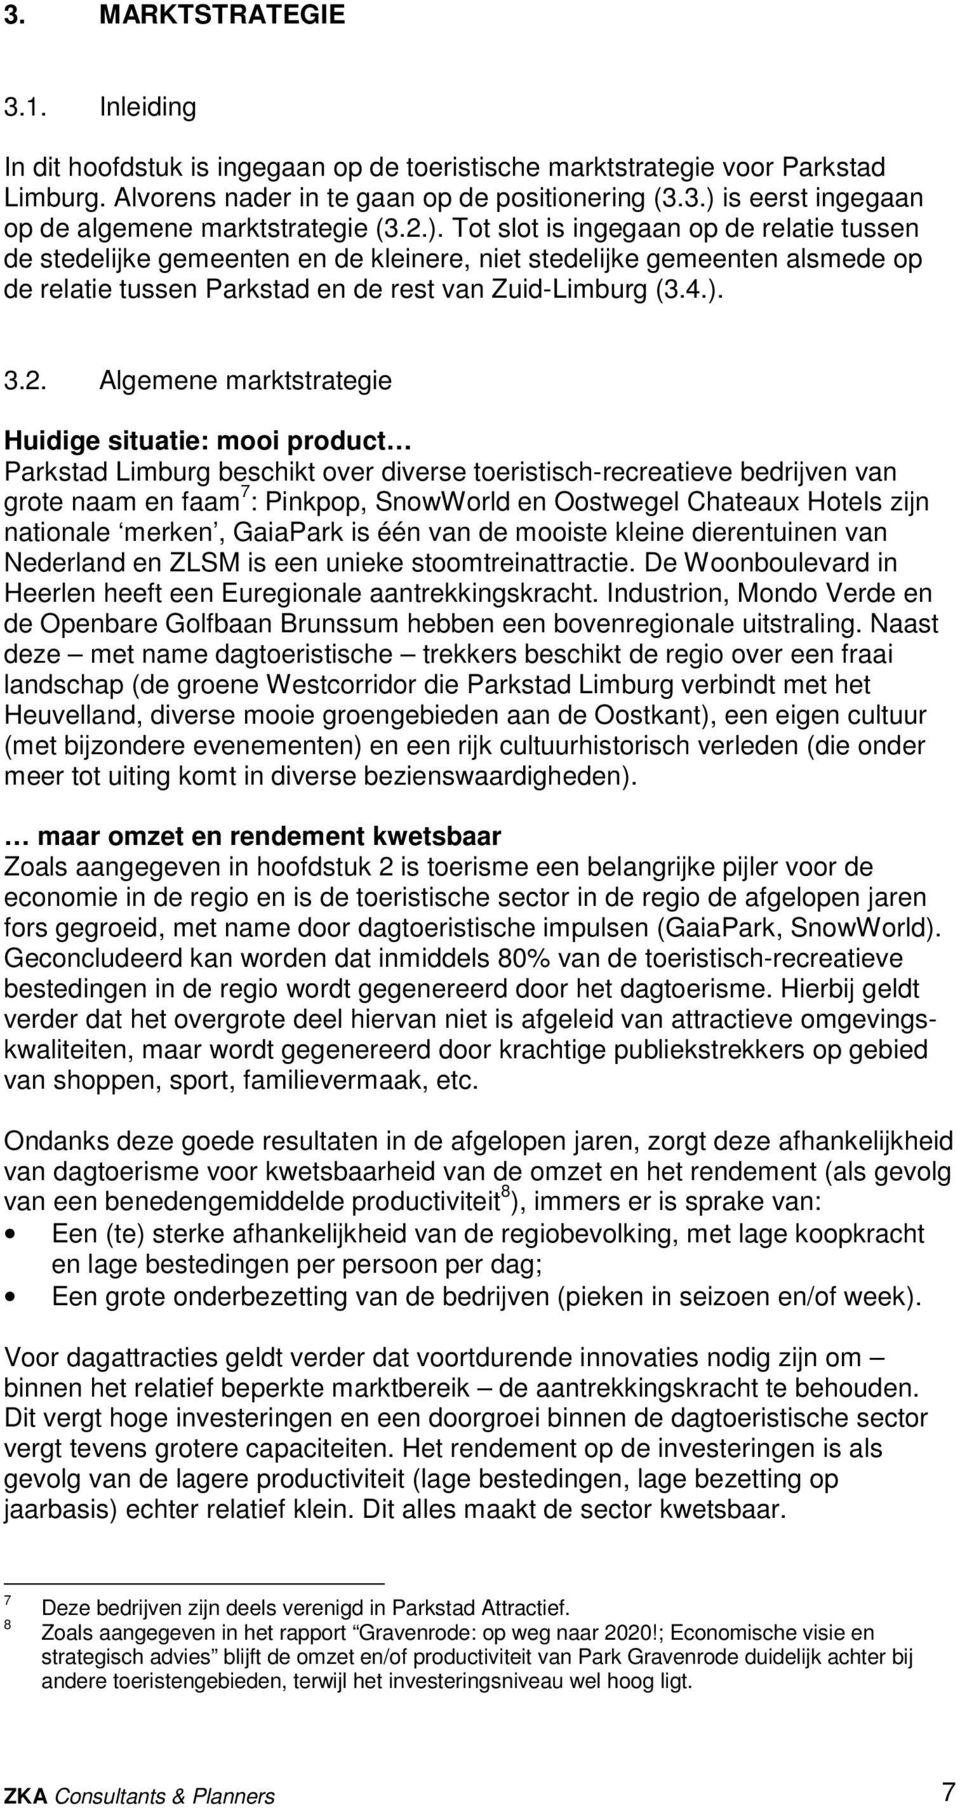 Algemene marktstrategie Huidige situatie: mooi product Parkstad Limburg beschikt over diverse toeristisch-recreatieve bedrijven van grote naam en faam 7 : Pinkpop, SnowWorld en Oostwegel Chateaux